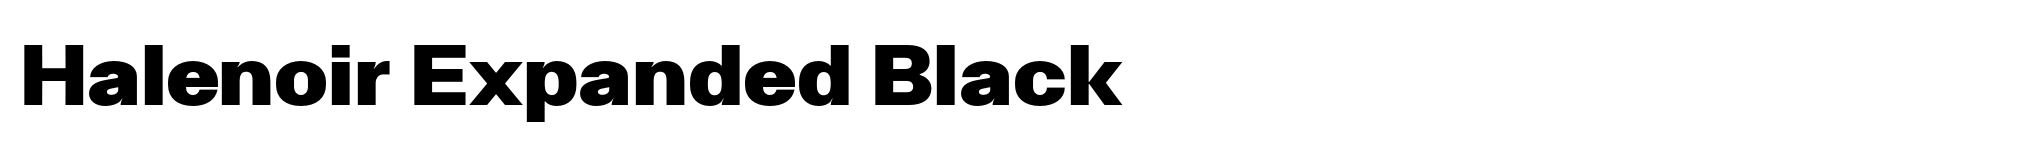 Halenoir Expanded Black image